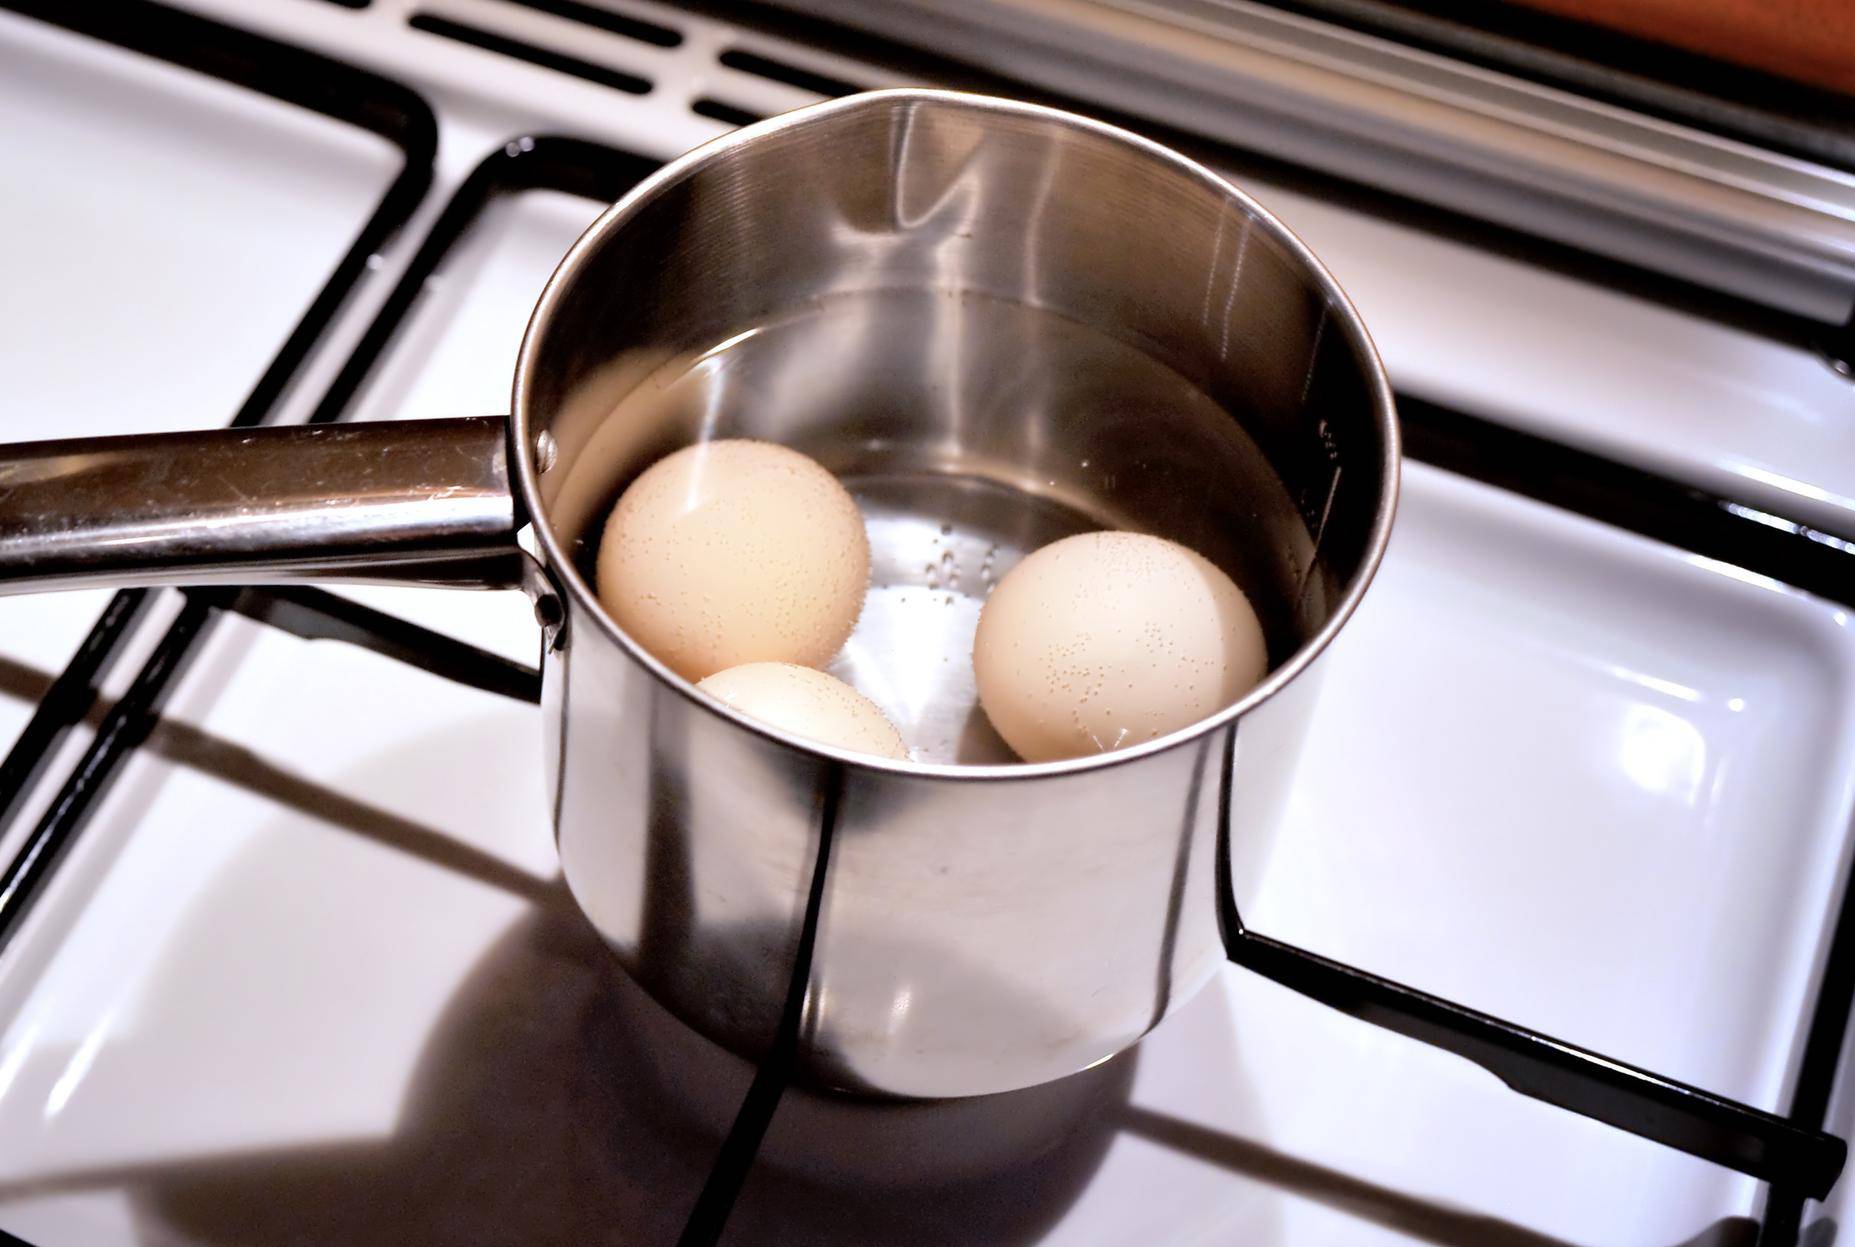 Svaki dan bi trebali pojesti tri jaja - stručnjaci objasnili zašto